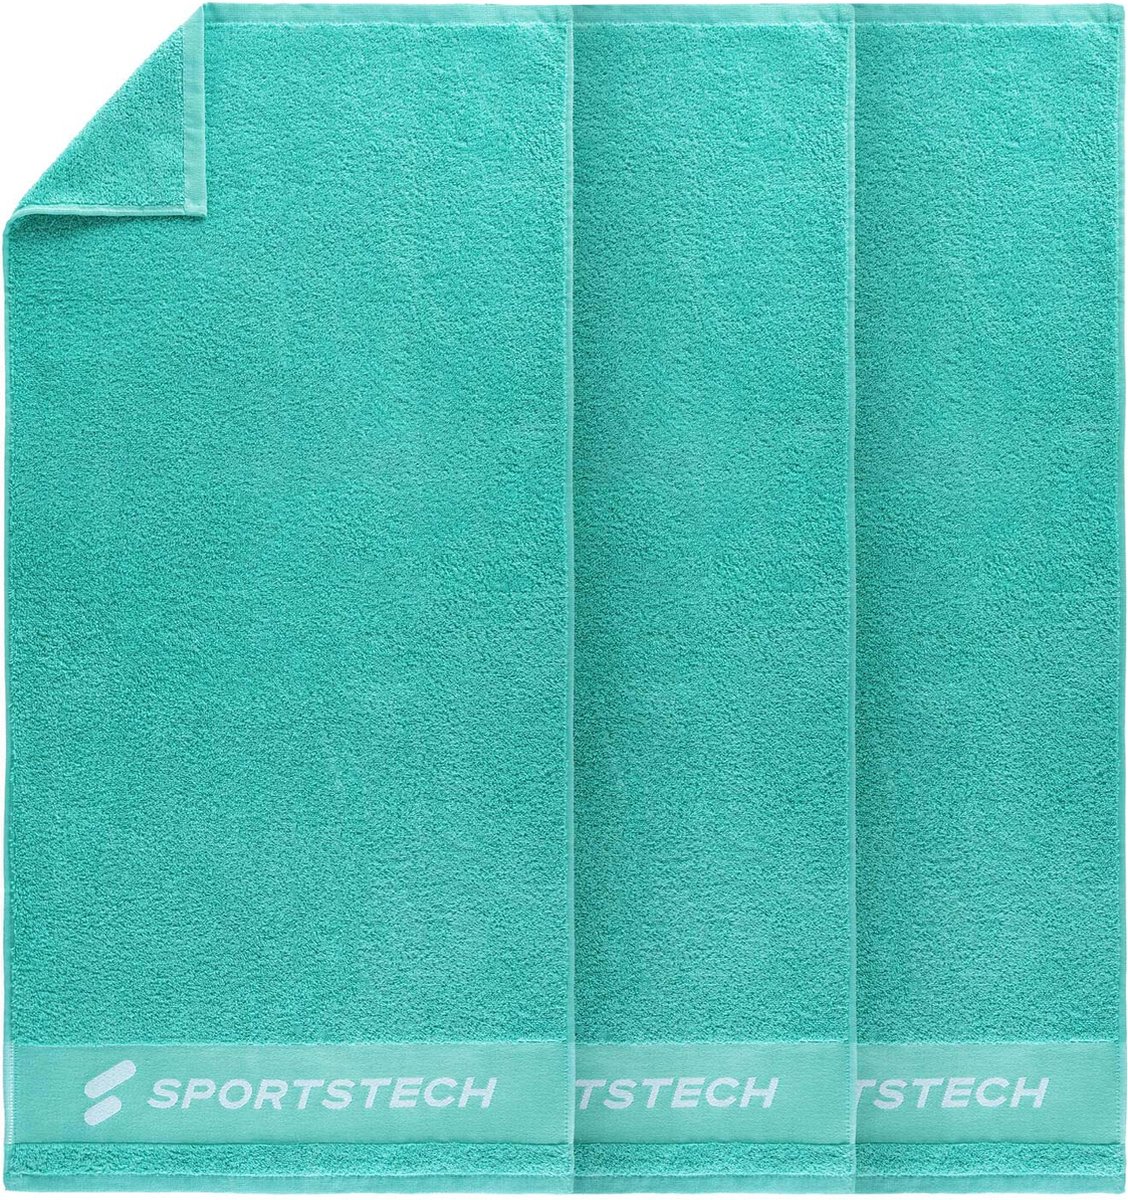 Sportstech handdoek TWL50 | set van 3 | hoge kwaliteit handdoek voor fitness in de sportschool of thuis | 100% katoen | 100 x 50 cm accessoire | enkel of als set | stijlvol design